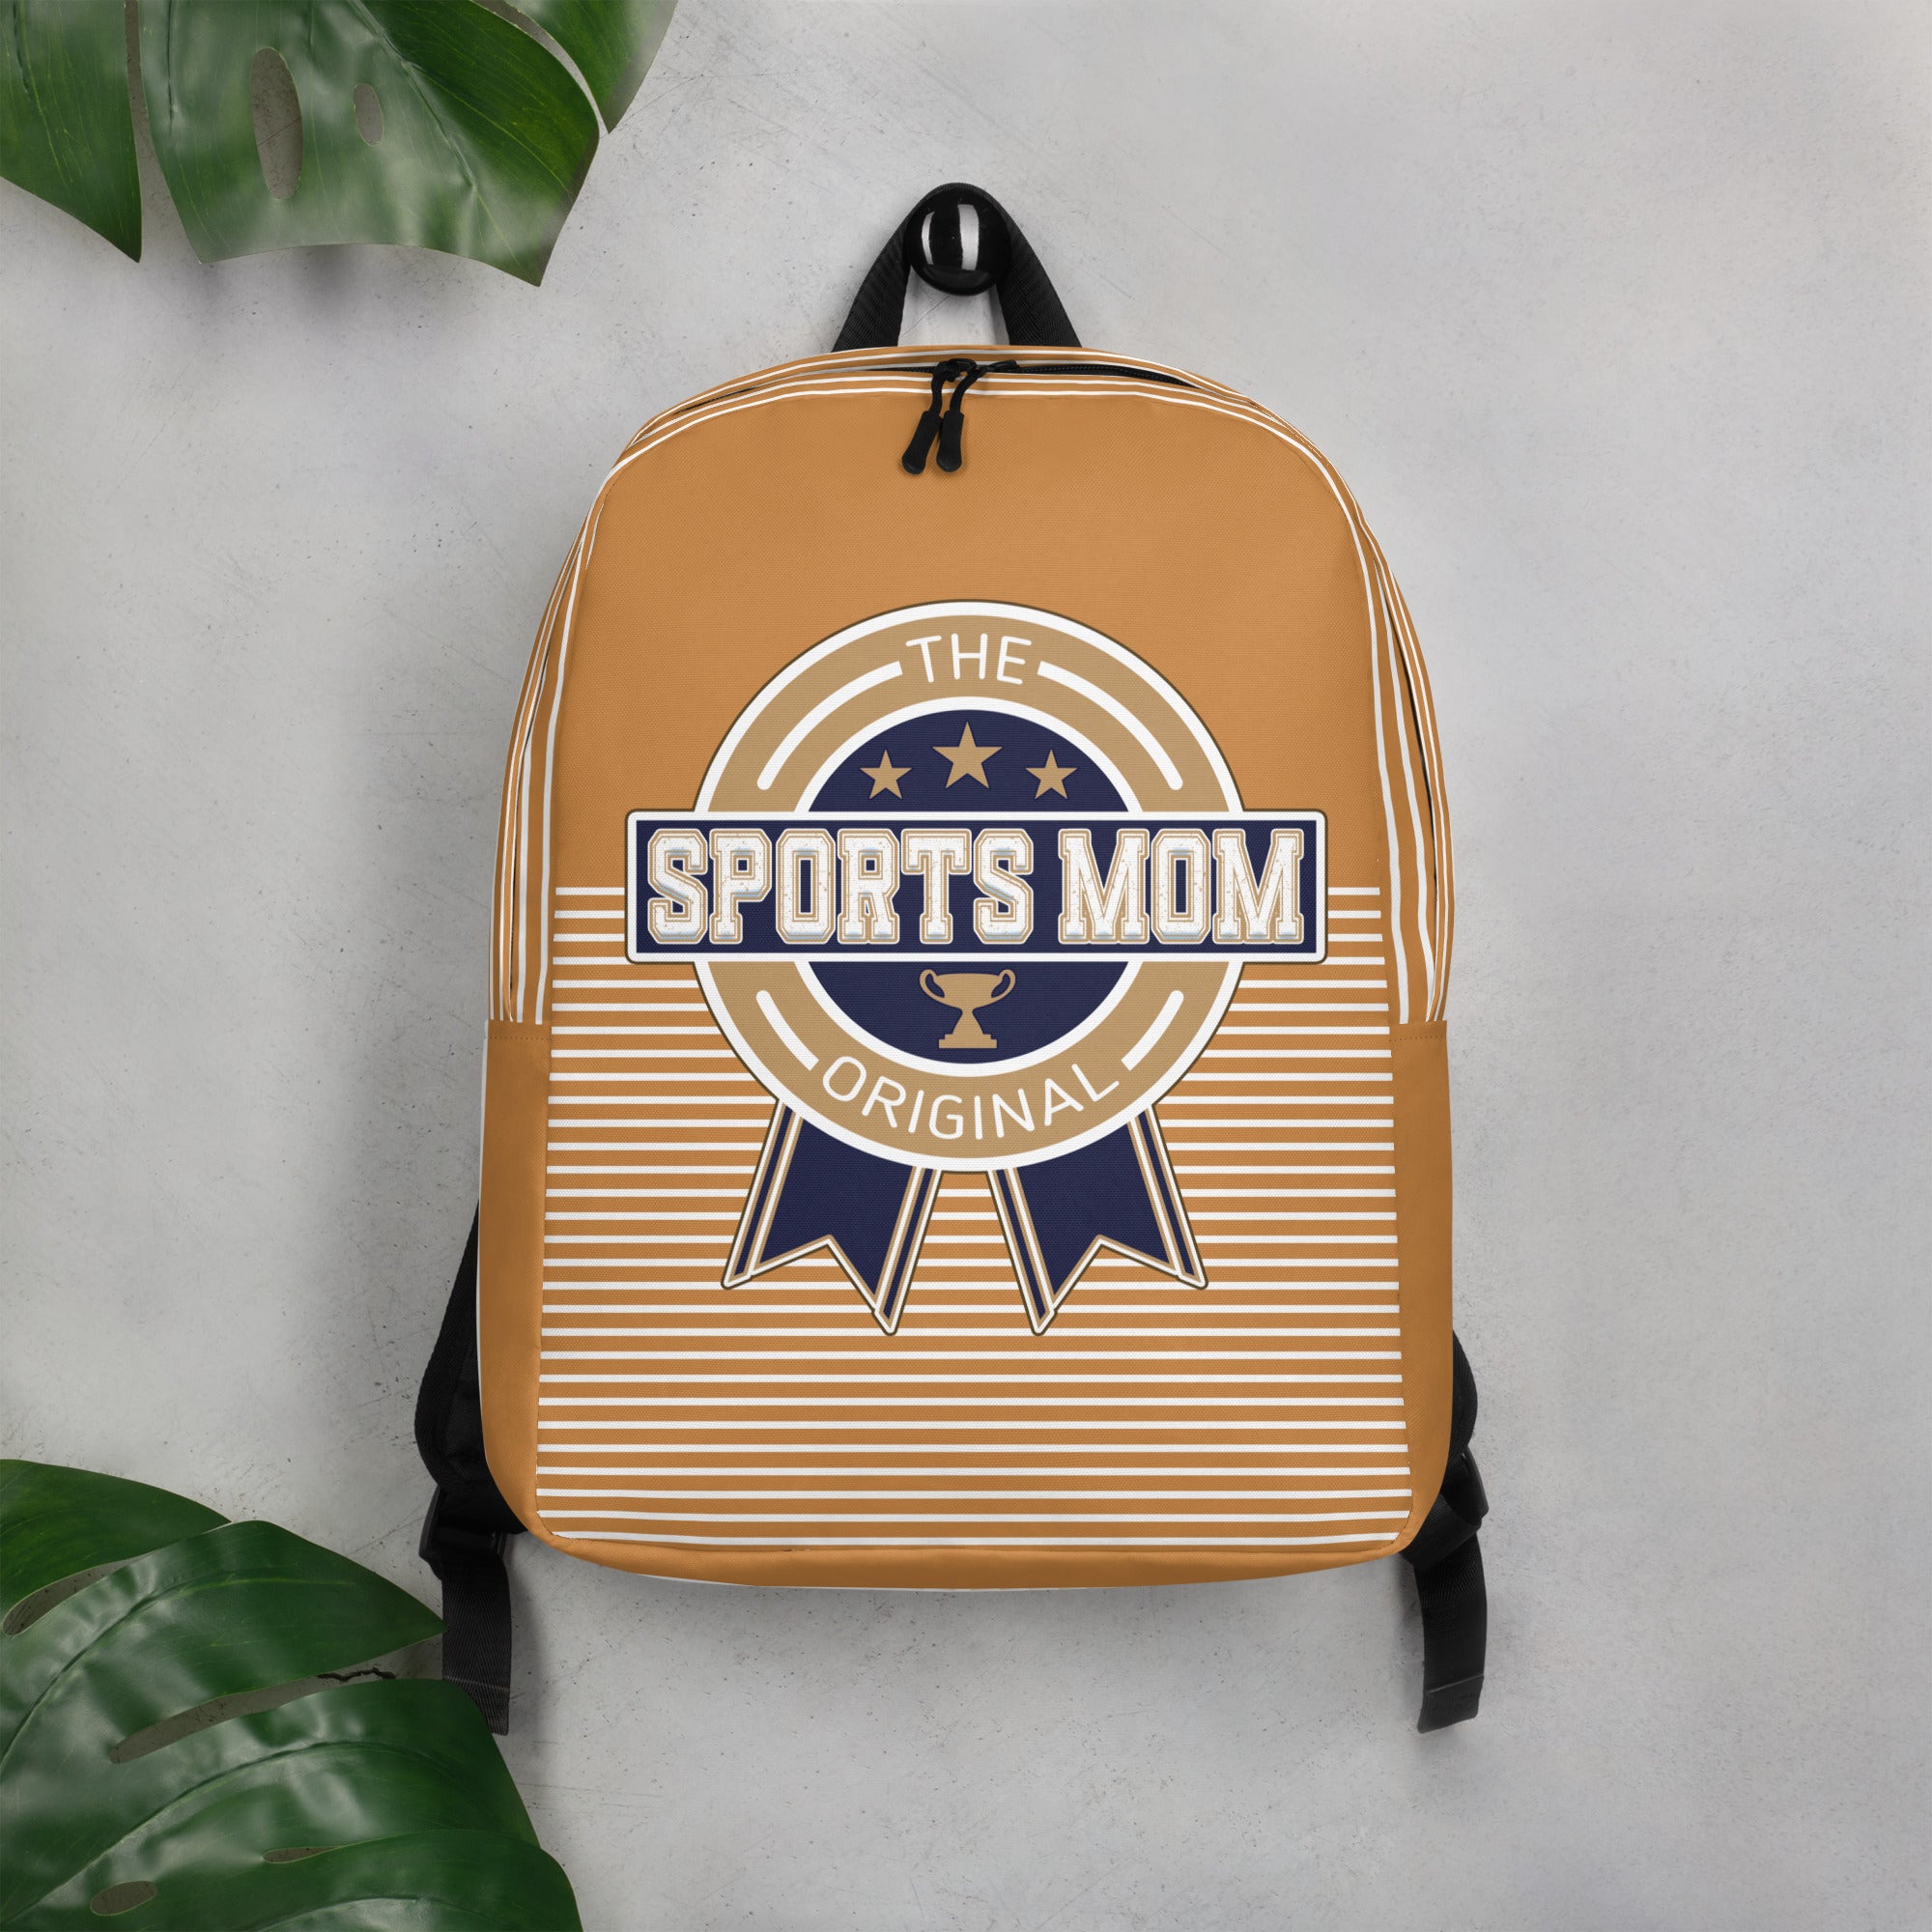 Sports Mom Minimalist Backpack - Away Game - Pig Skin